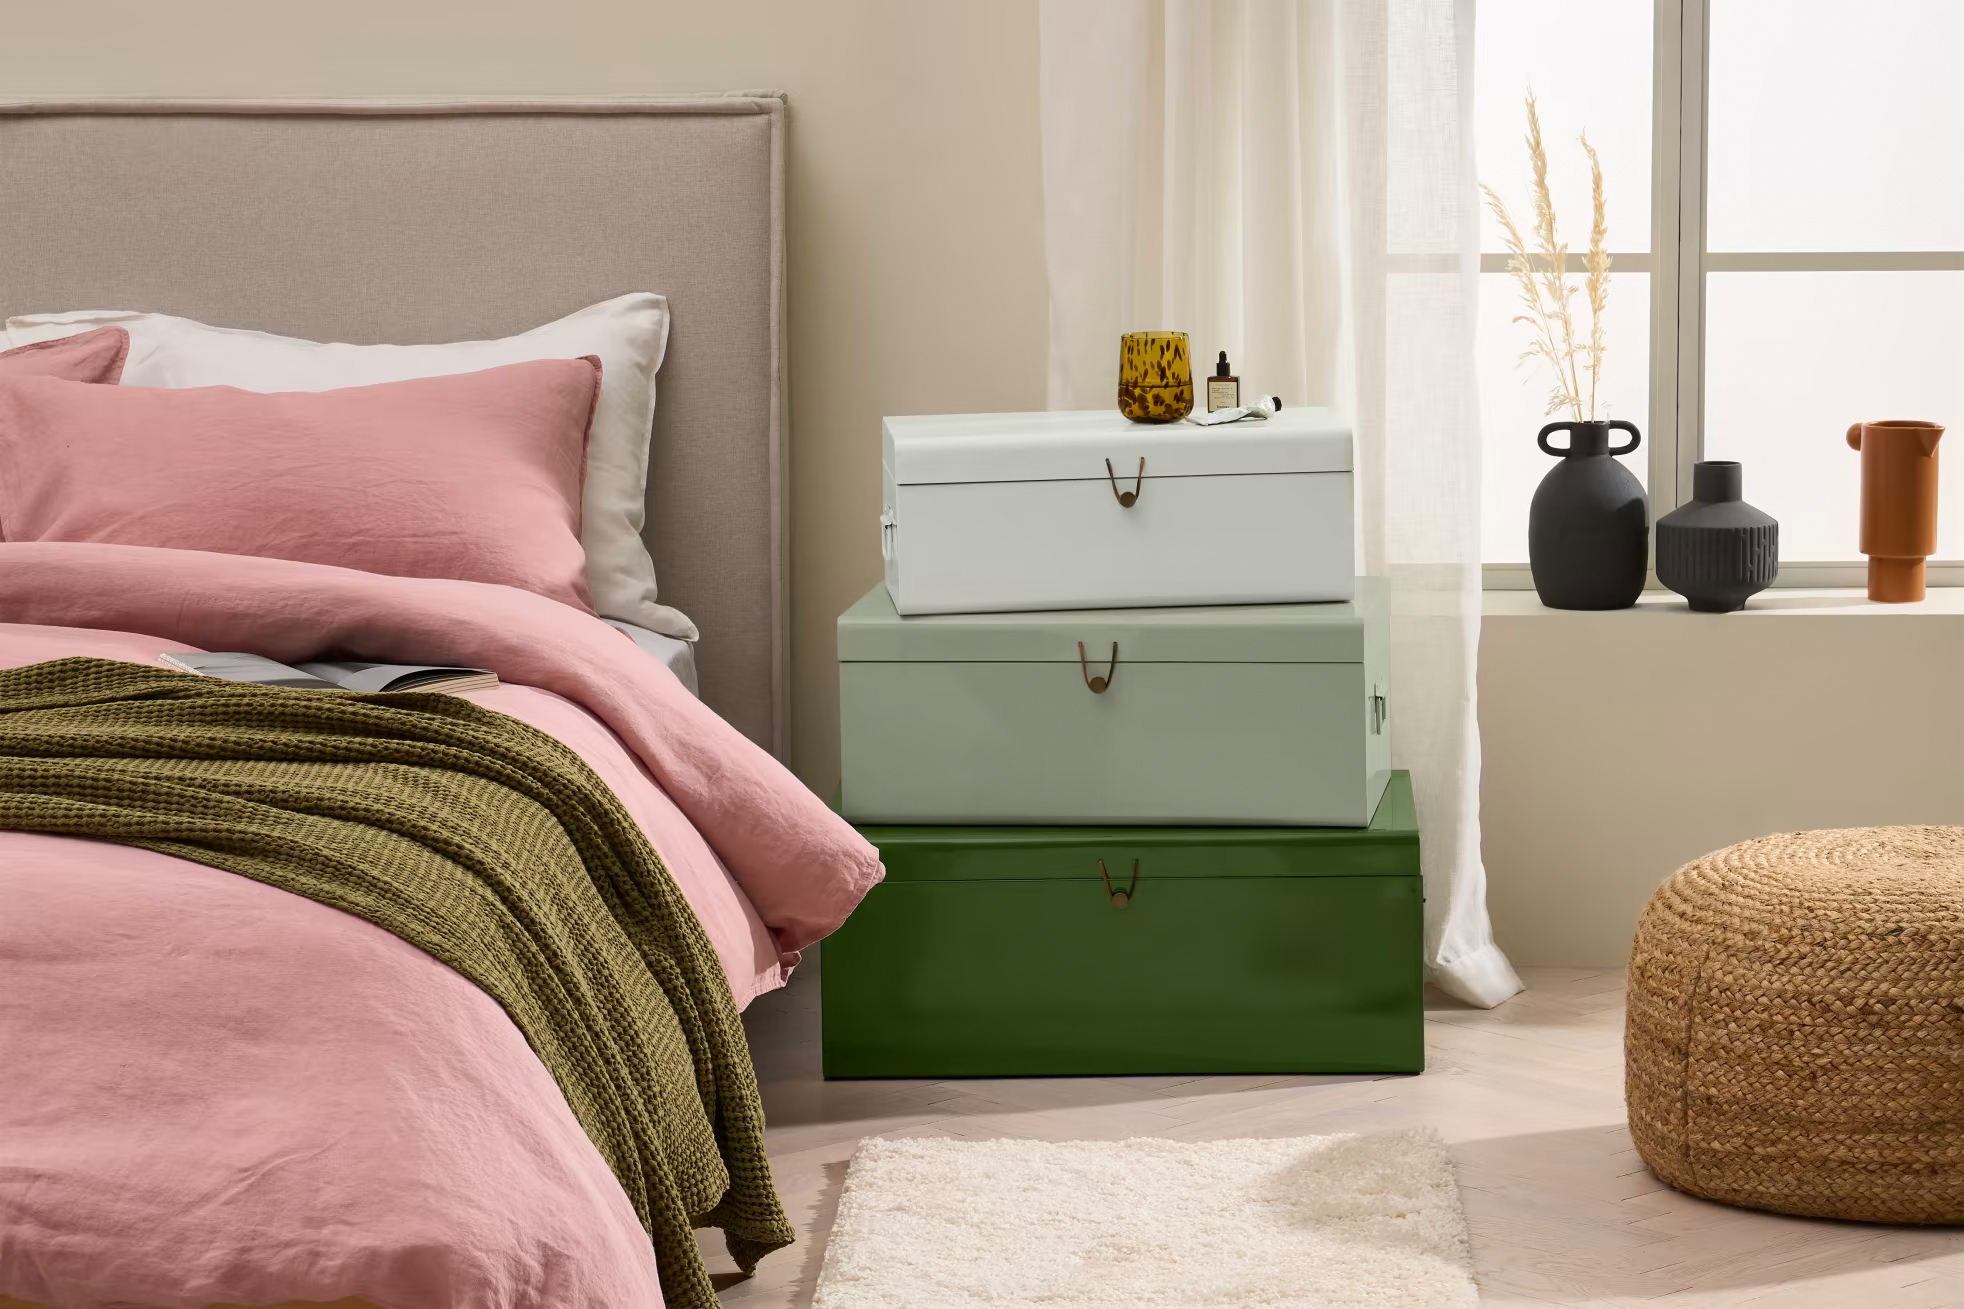 50 tinten grijs? Kies een paar mooie tinten groen op je slaapkamer. Dat kan met deze trendy opbergkisten.